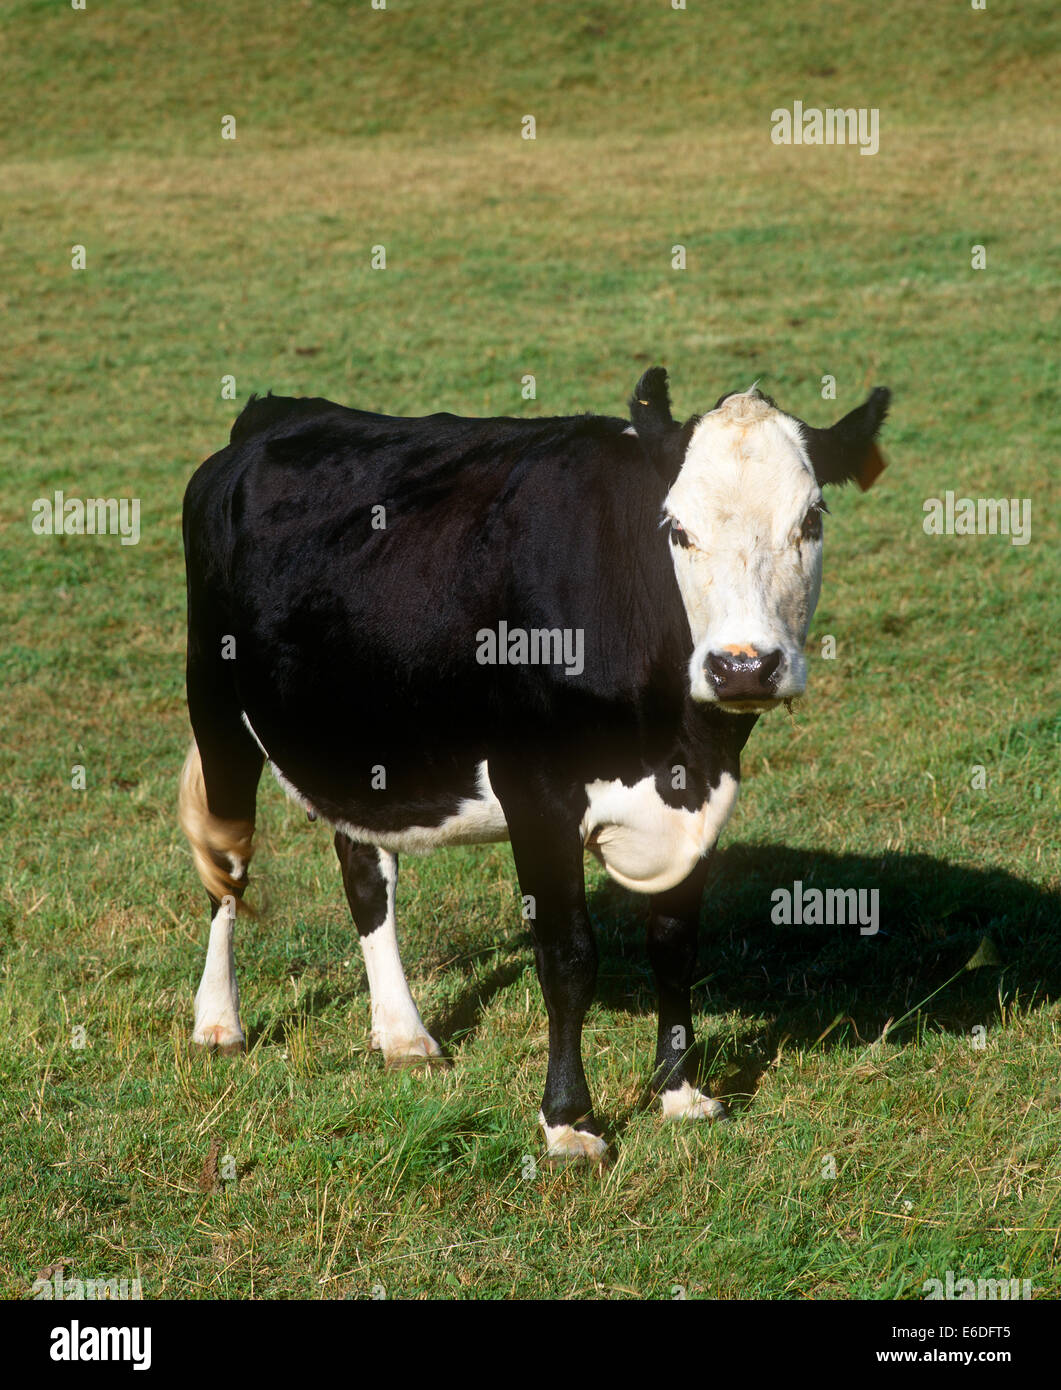 Une vache debout à l'extérieur sur l'herbe Banque D'Images